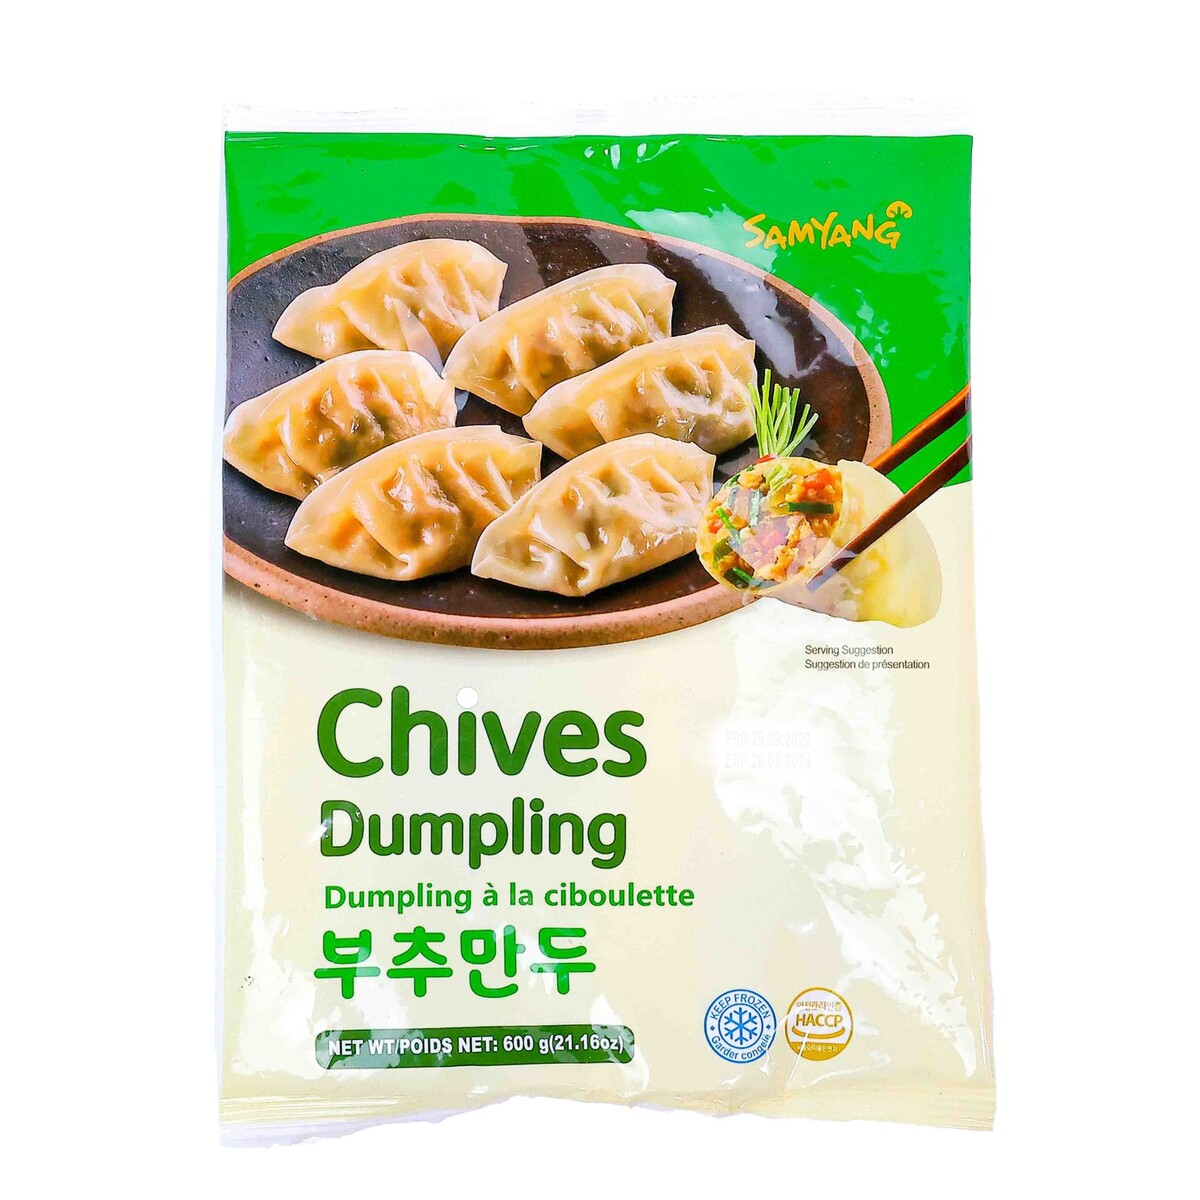 Samyang Chives Dumpling 600 g